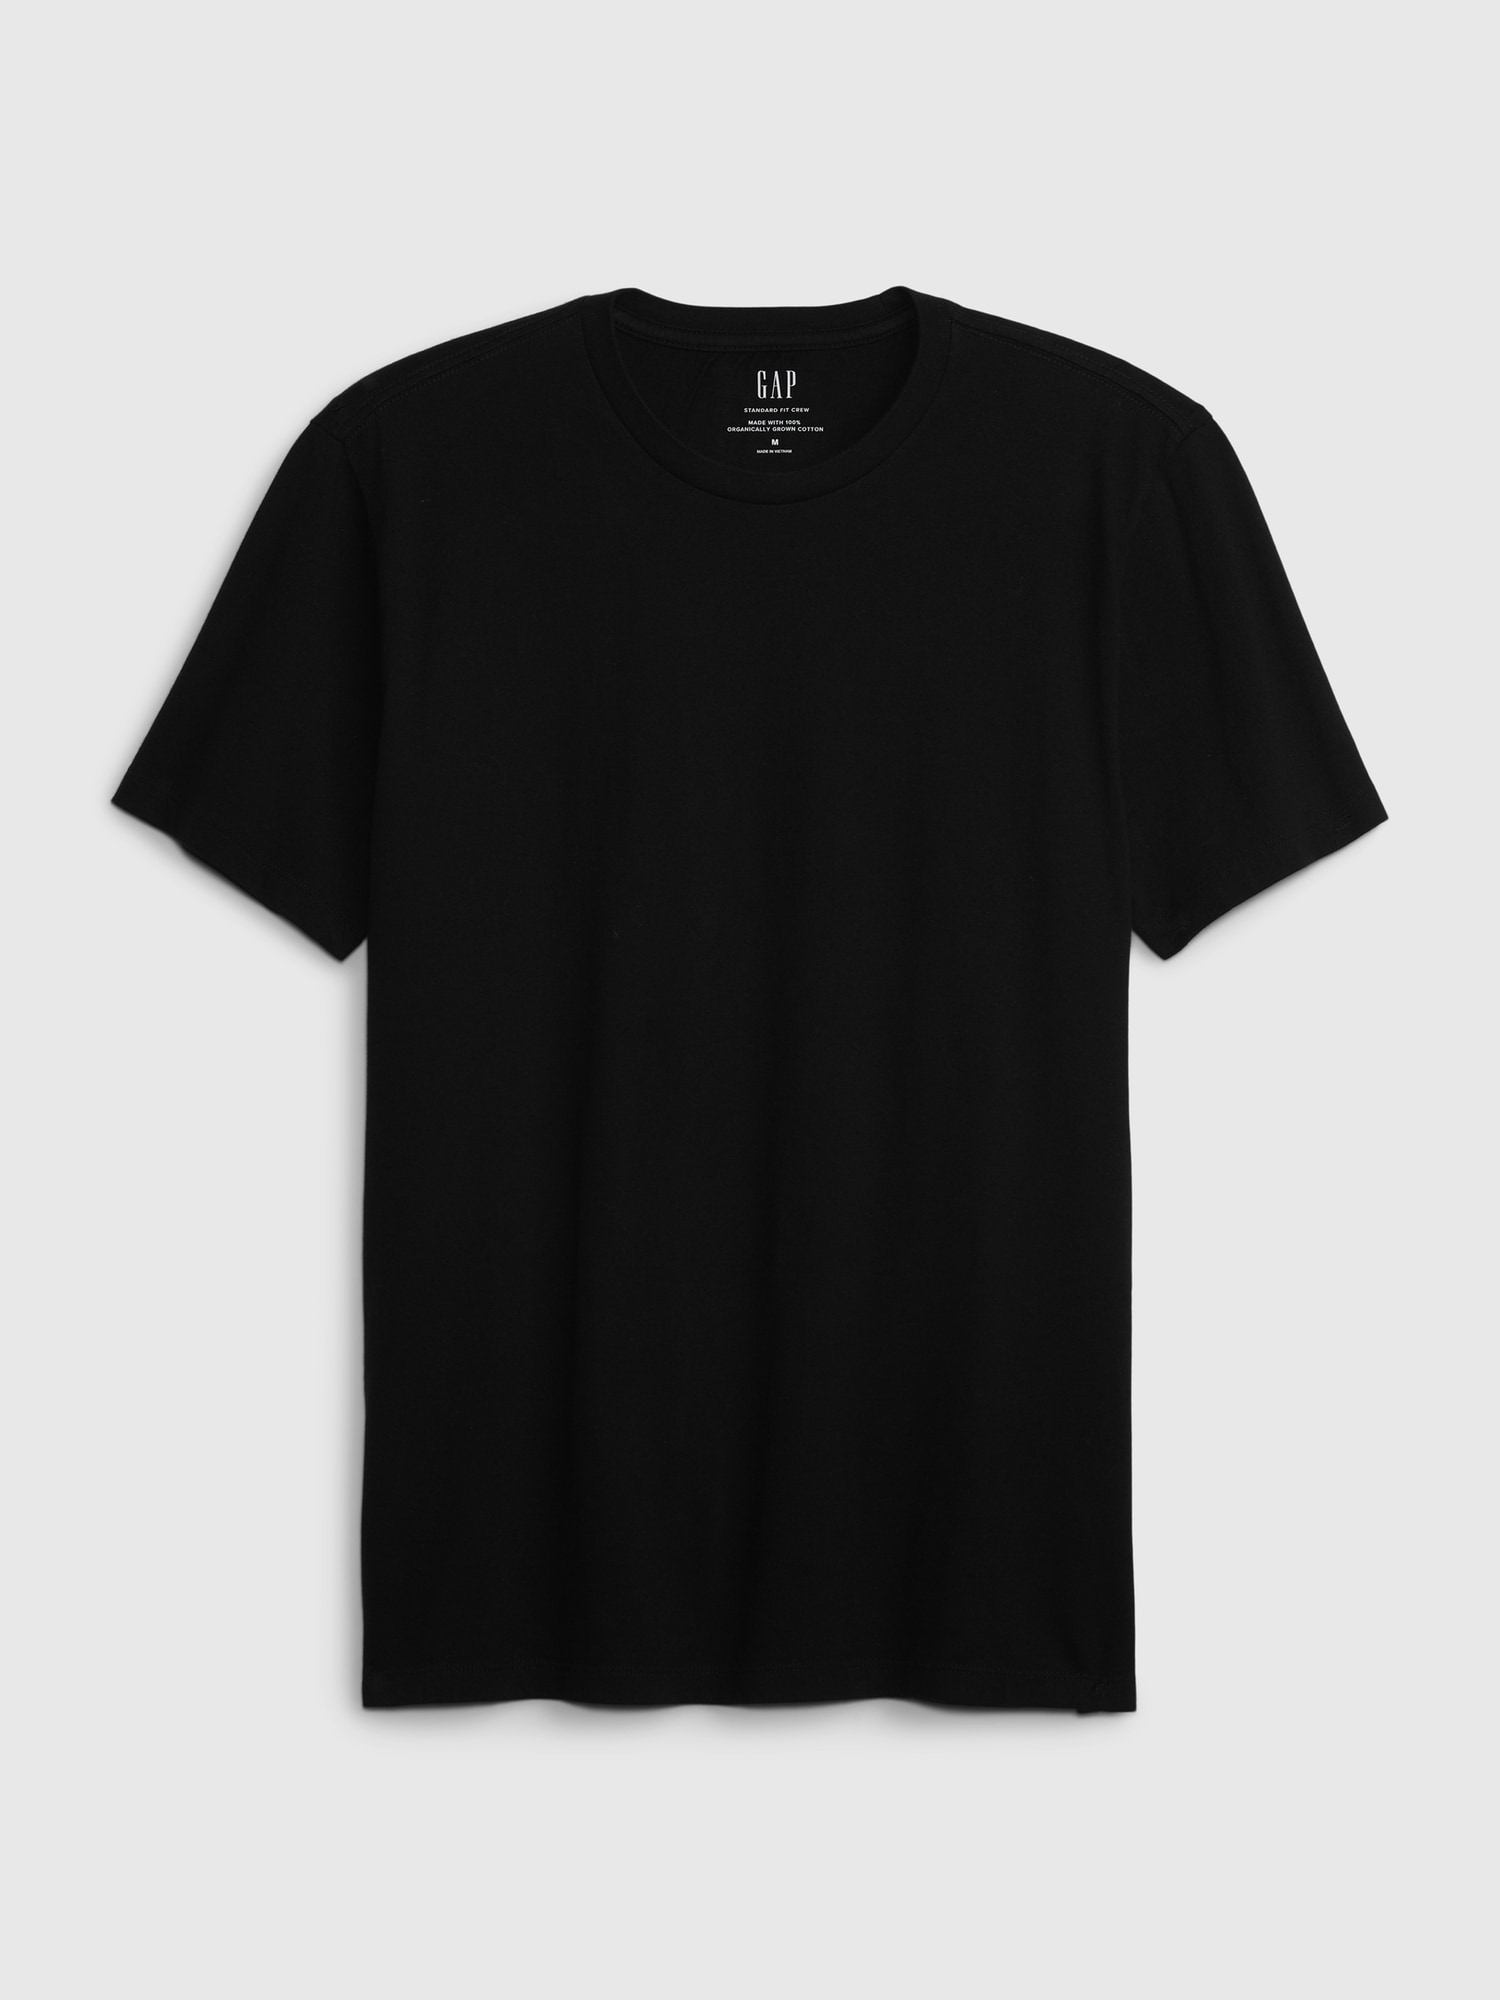 Original Essentials Slim-Fit Long Sleeve Tall Men's T-Shirt in Black S / Tall / Black